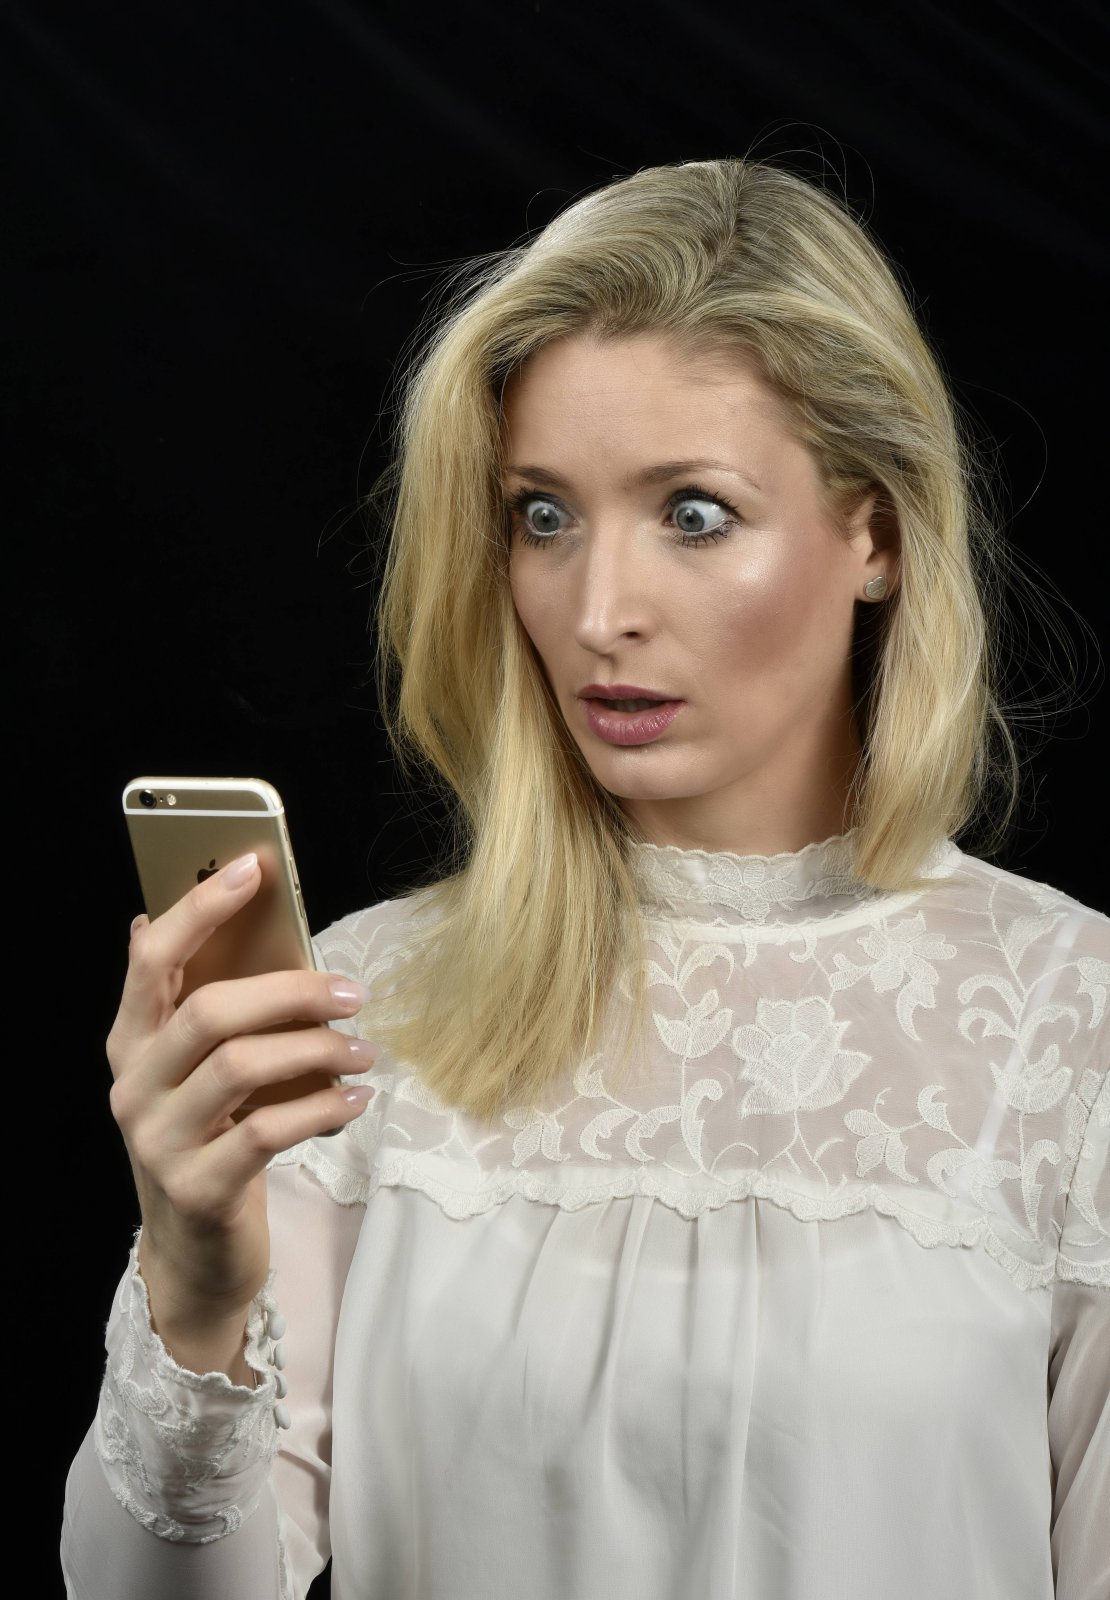 Eine Frau schaut entsetzt auf ihr iPhone.